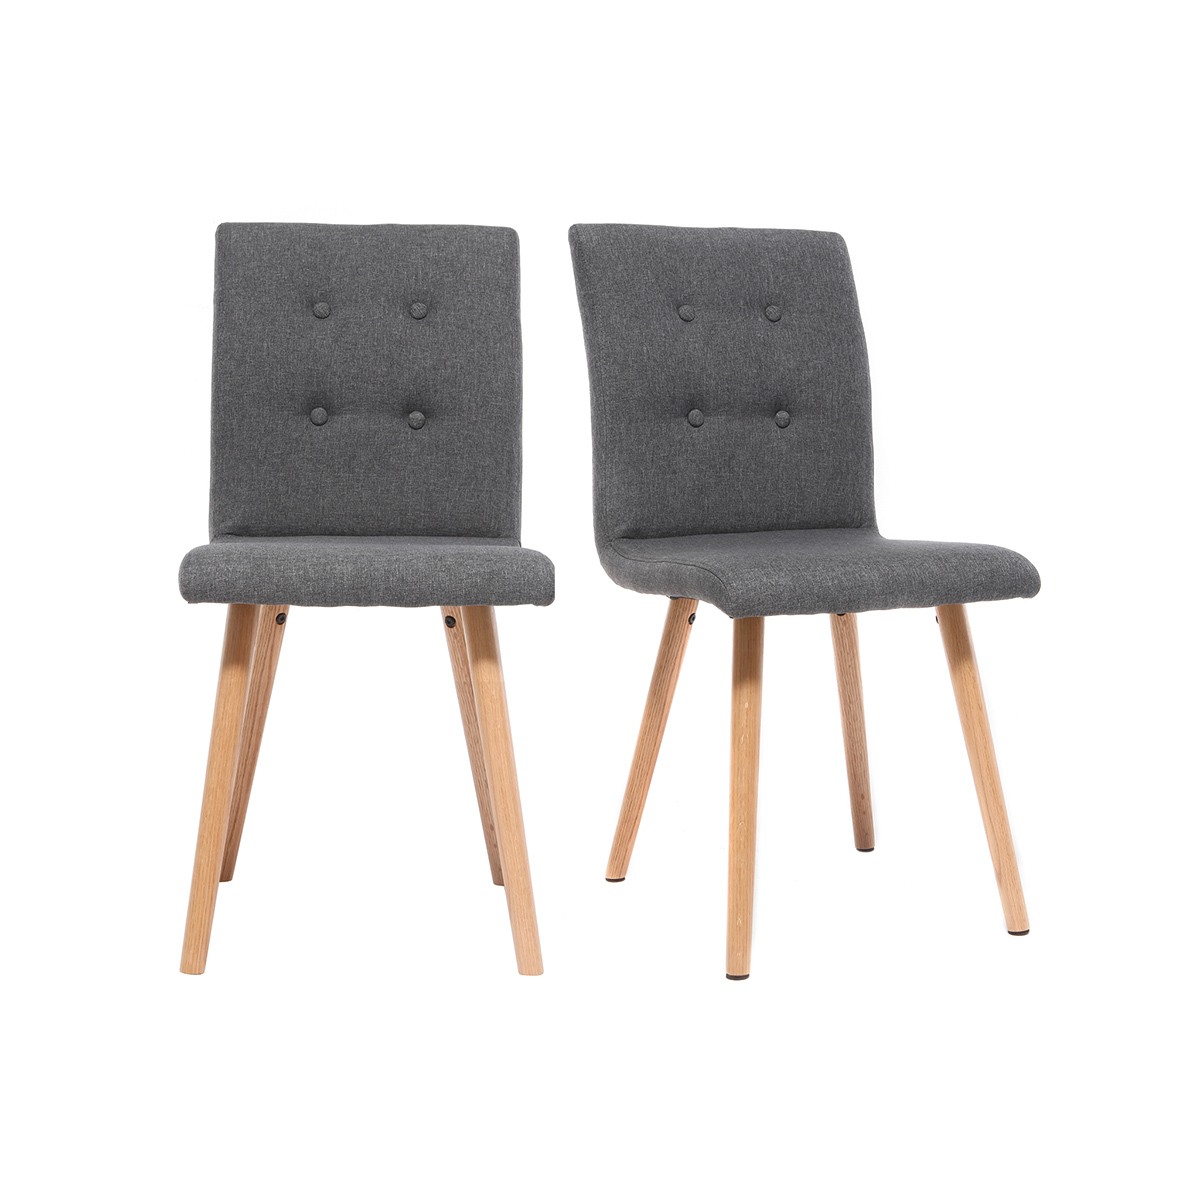 Chaise design en tissu gris foncé et bois clair massif (lot de 2) HORTA vue1